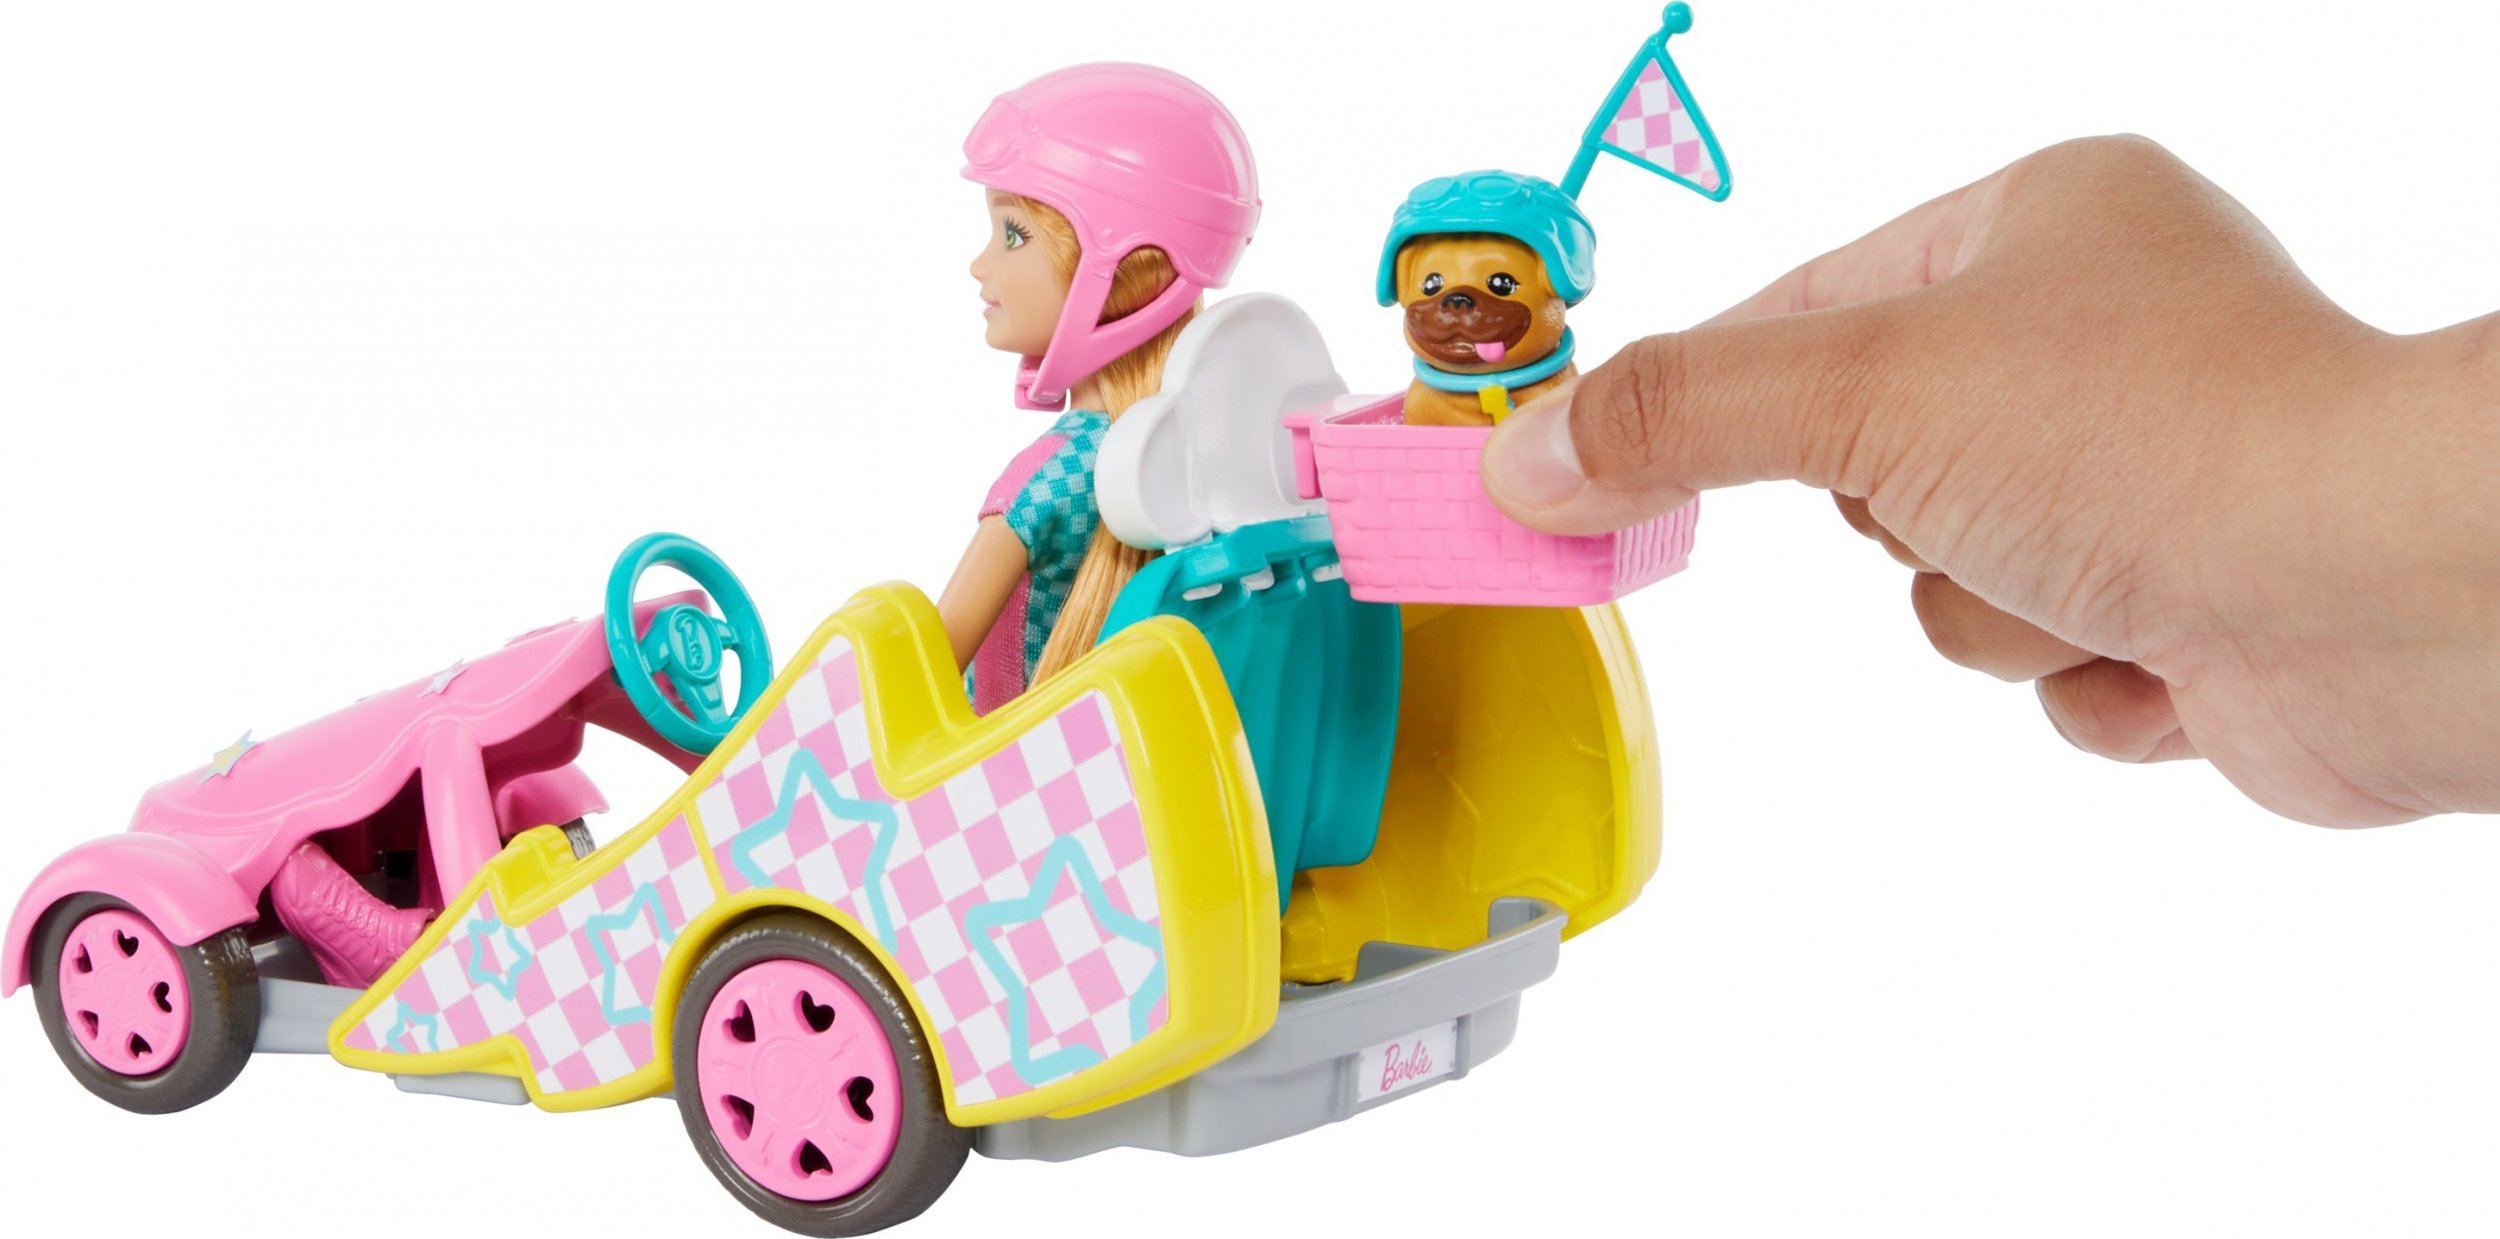 Lalka Barbie Mattel Gokart Stacie Pojazd filmowy i lalka + piesek HRM08